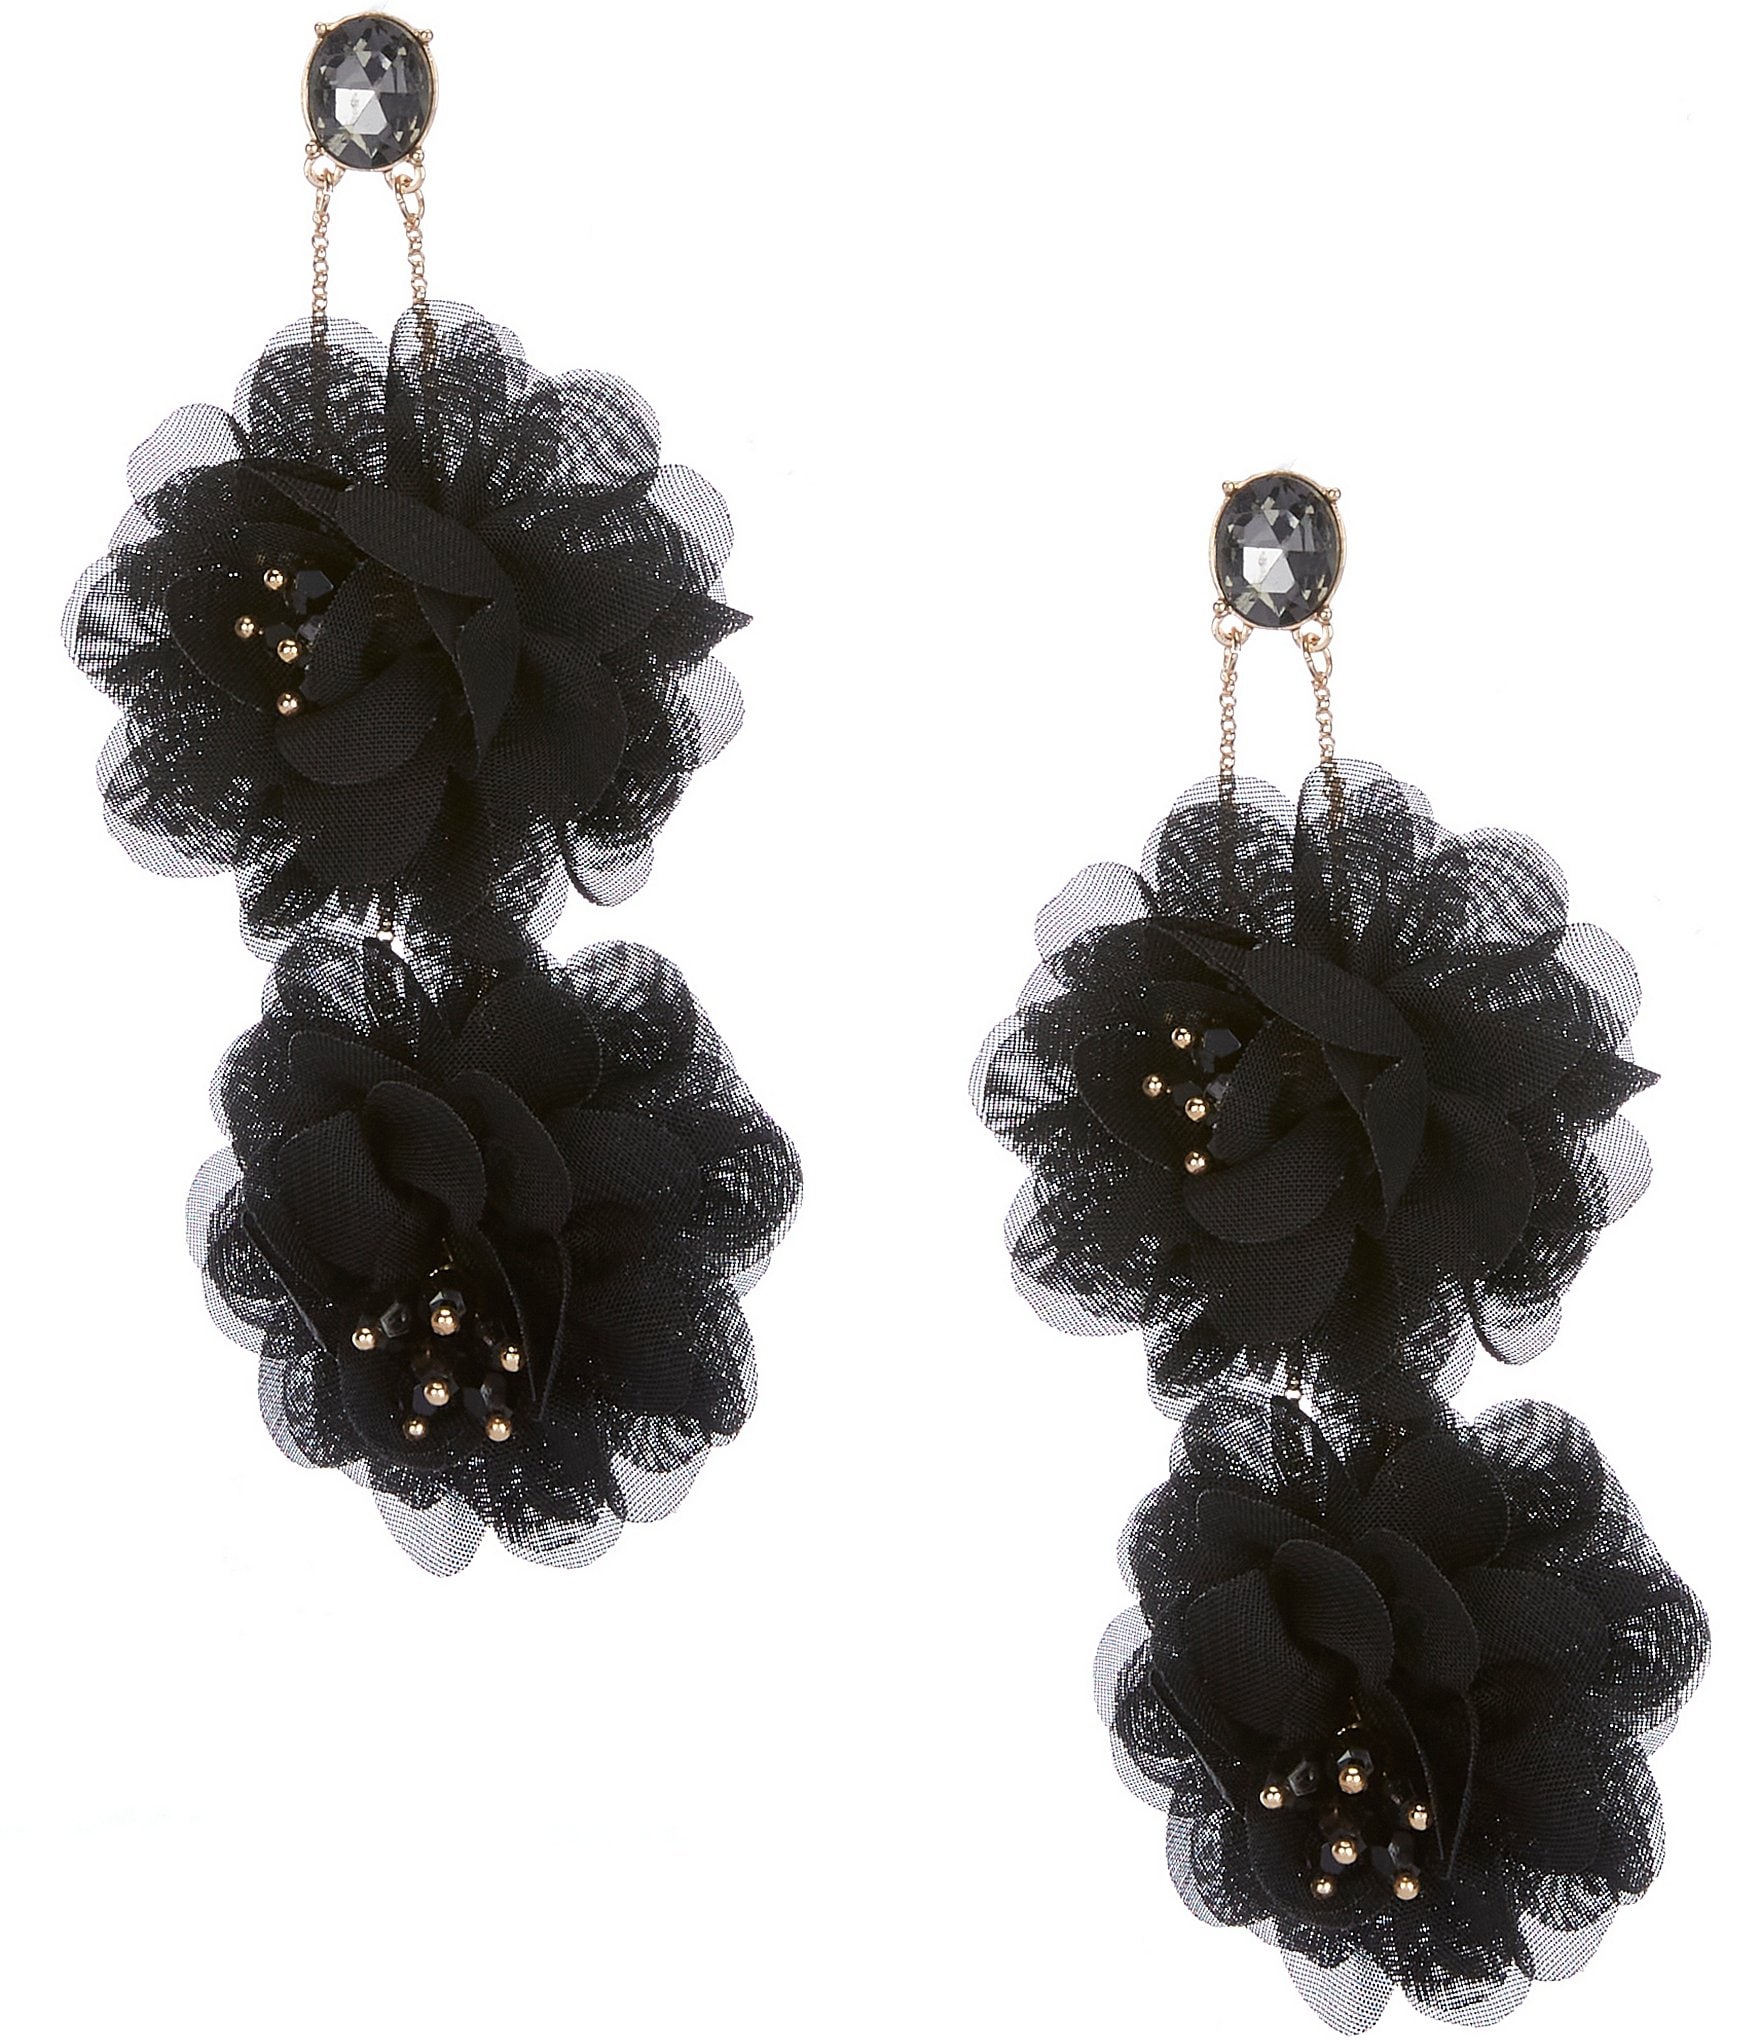 Natasha Accessories Flower Power Black Rhinestone Statement Necklace